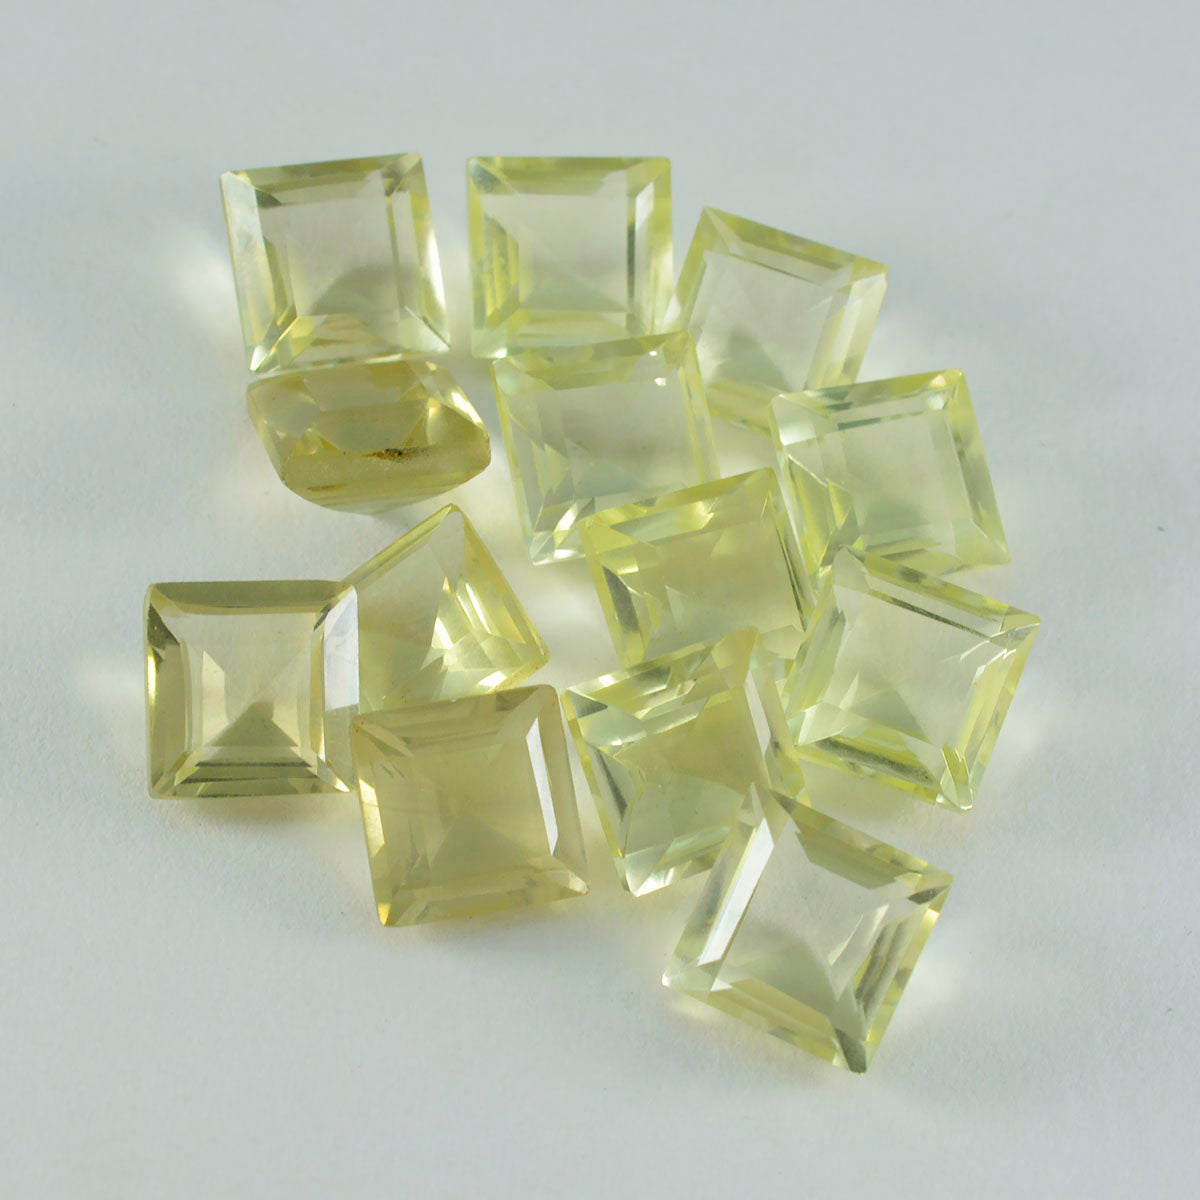 riyogems 1шт желтый лимонный кварц ограненный 7x7 мм квадратная форма качество A1 драгоценные камни